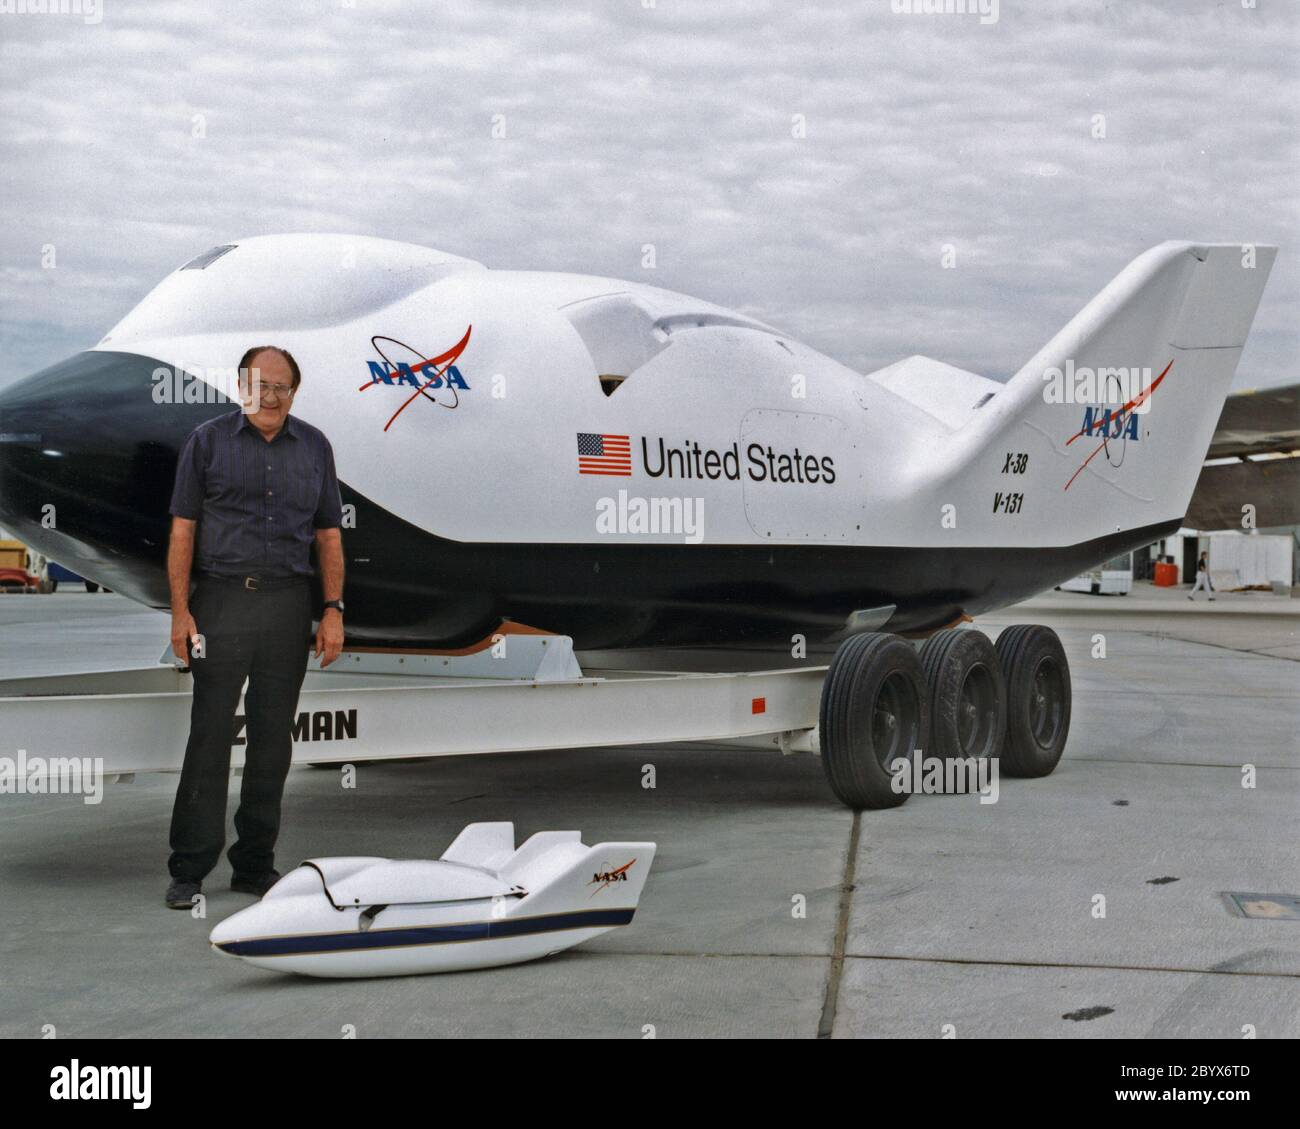 Dale Reed, ein NASA-Ingenieur, der in den 1960er und 1970er Jahren an den ursprünglichen Hubkörper-Forschungsprogrammen arbeitete, steht mit einem Scale-Modell X-38, das in 1995 Forschungsflügen eingesetzt wurde, mit einem X-38 im Maßstab 1:1 (80 Prozent der Größe eines potenziellen Crew Return Vehicle) hinter ihm. Stockfoto